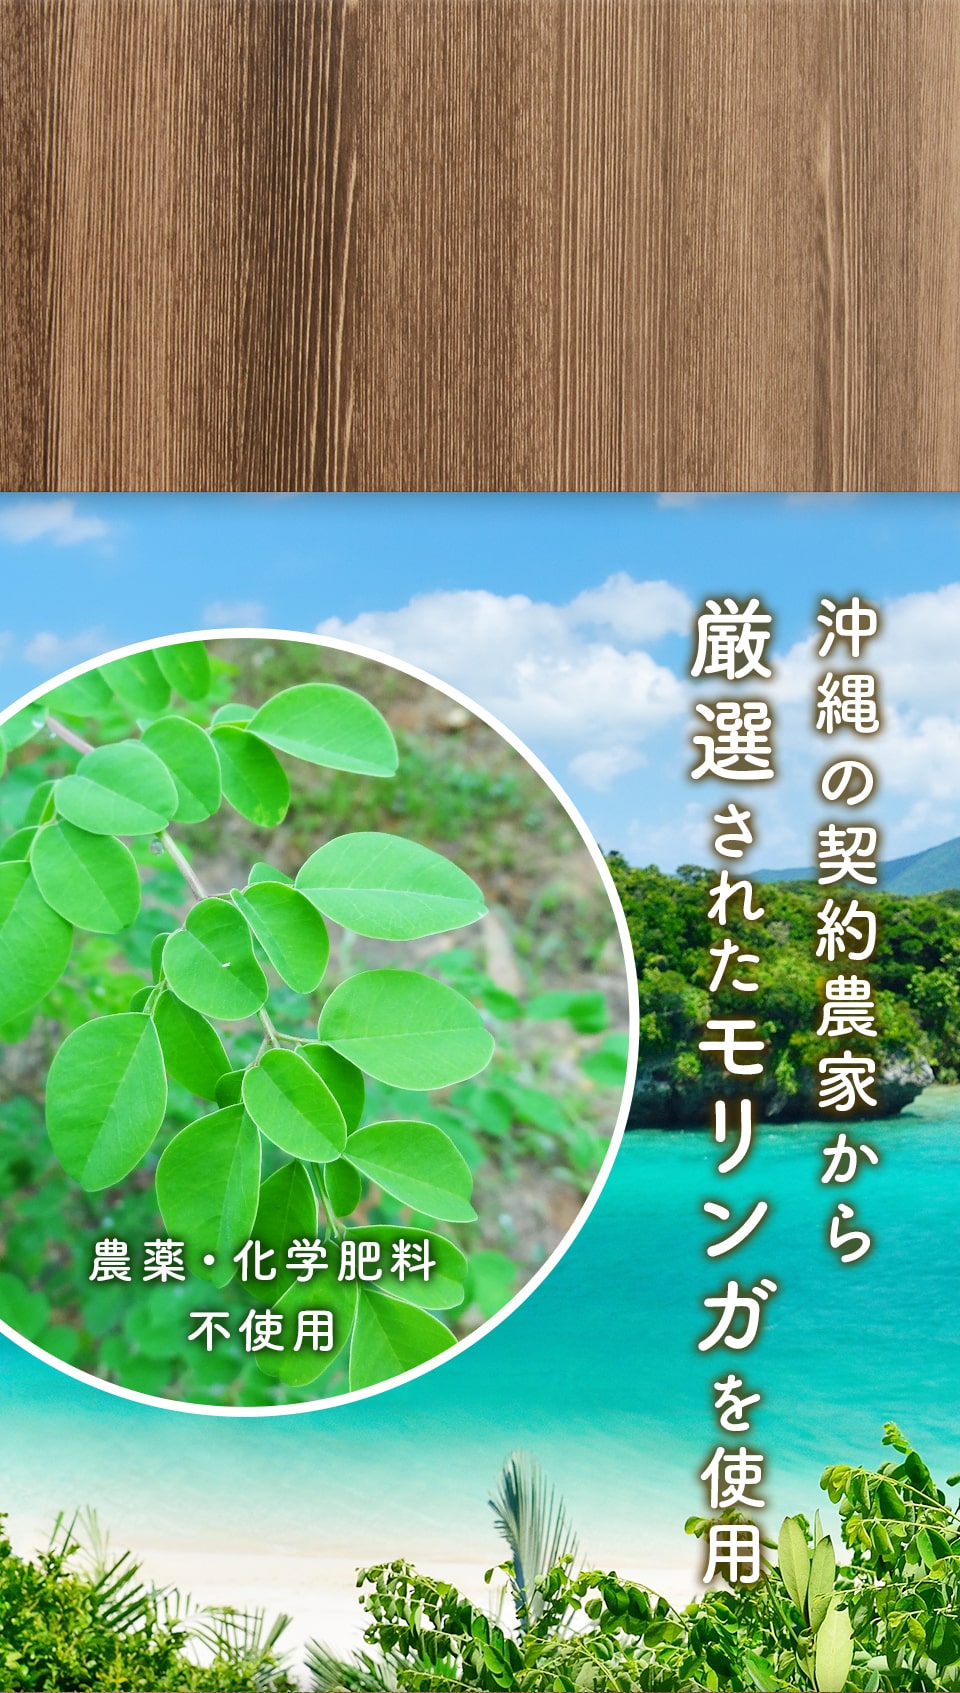 沖縄の契約農家から厳選されたモリンガを使用、農薬・化学肥料 不使用。